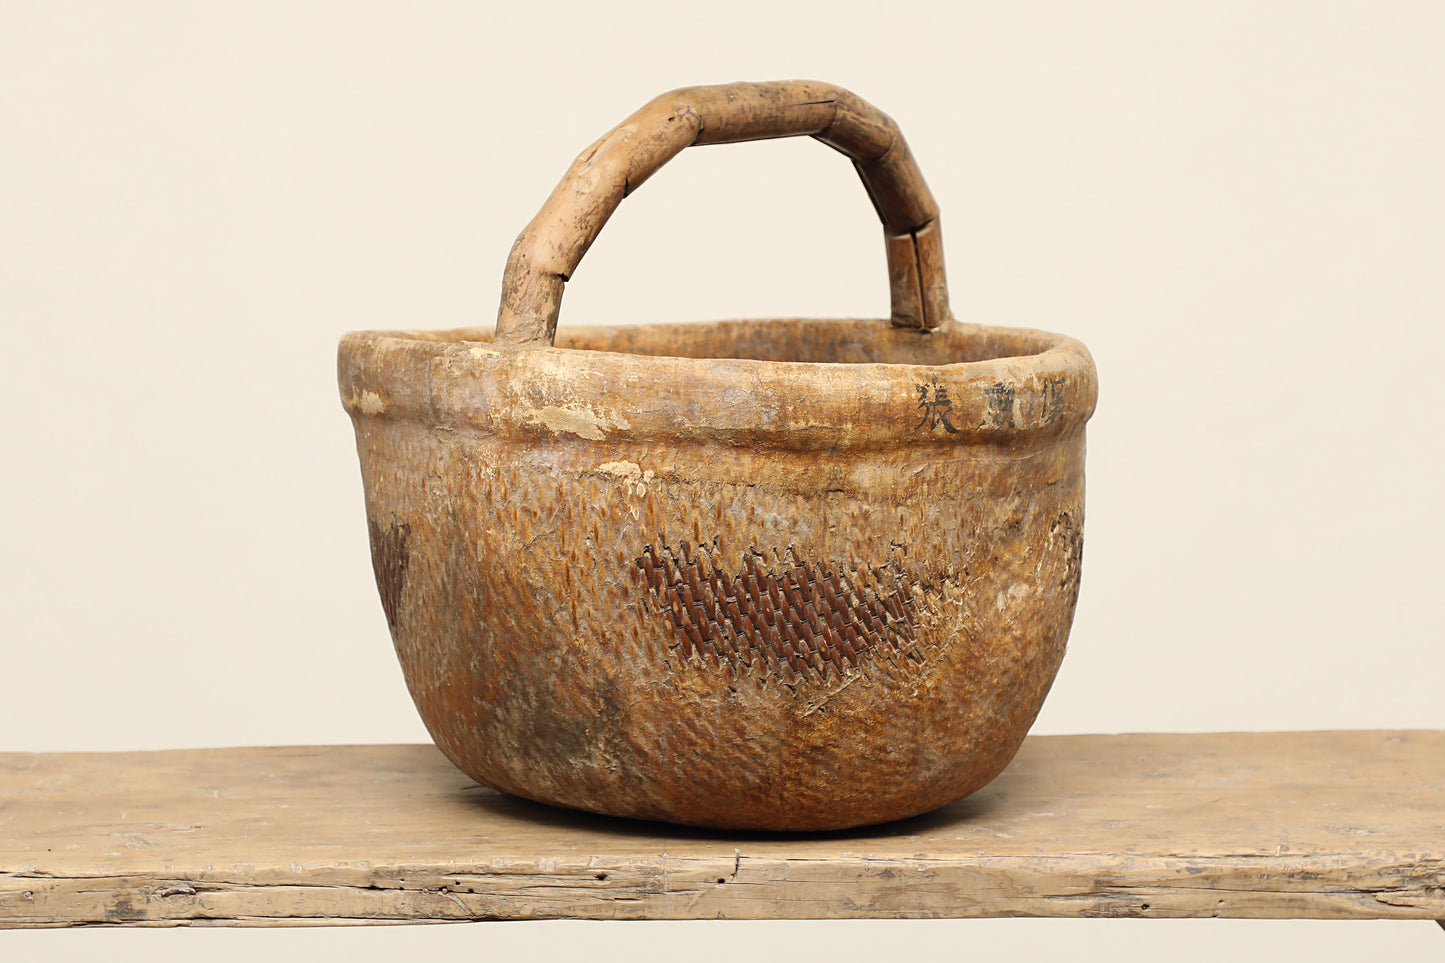 (GAT003) Vintage Grain Basket - Circa 1924 (19x18x20)